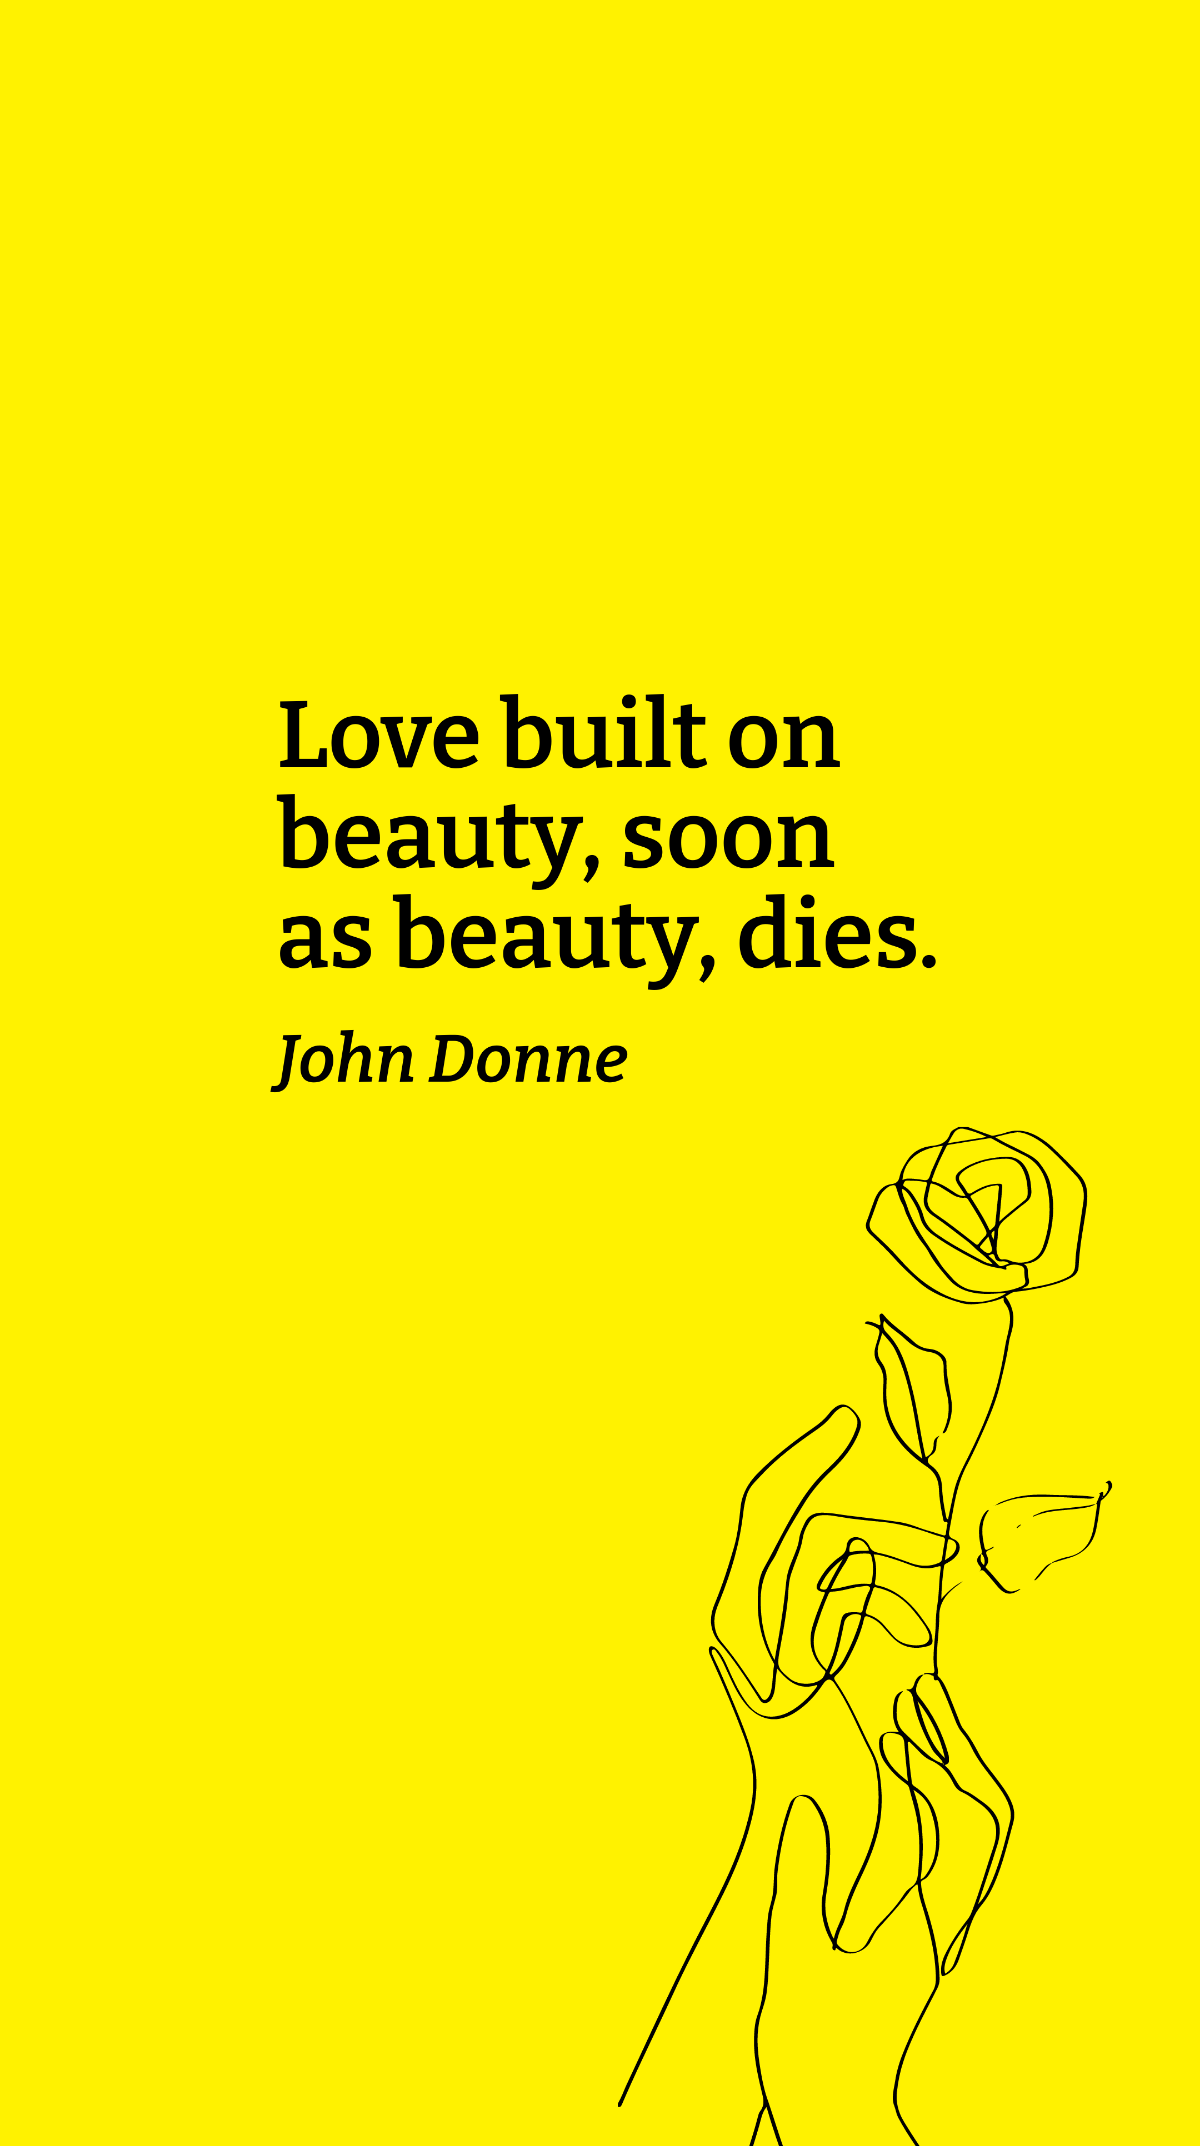 John Donne - Love built on beauty, soon as beauty, dies.